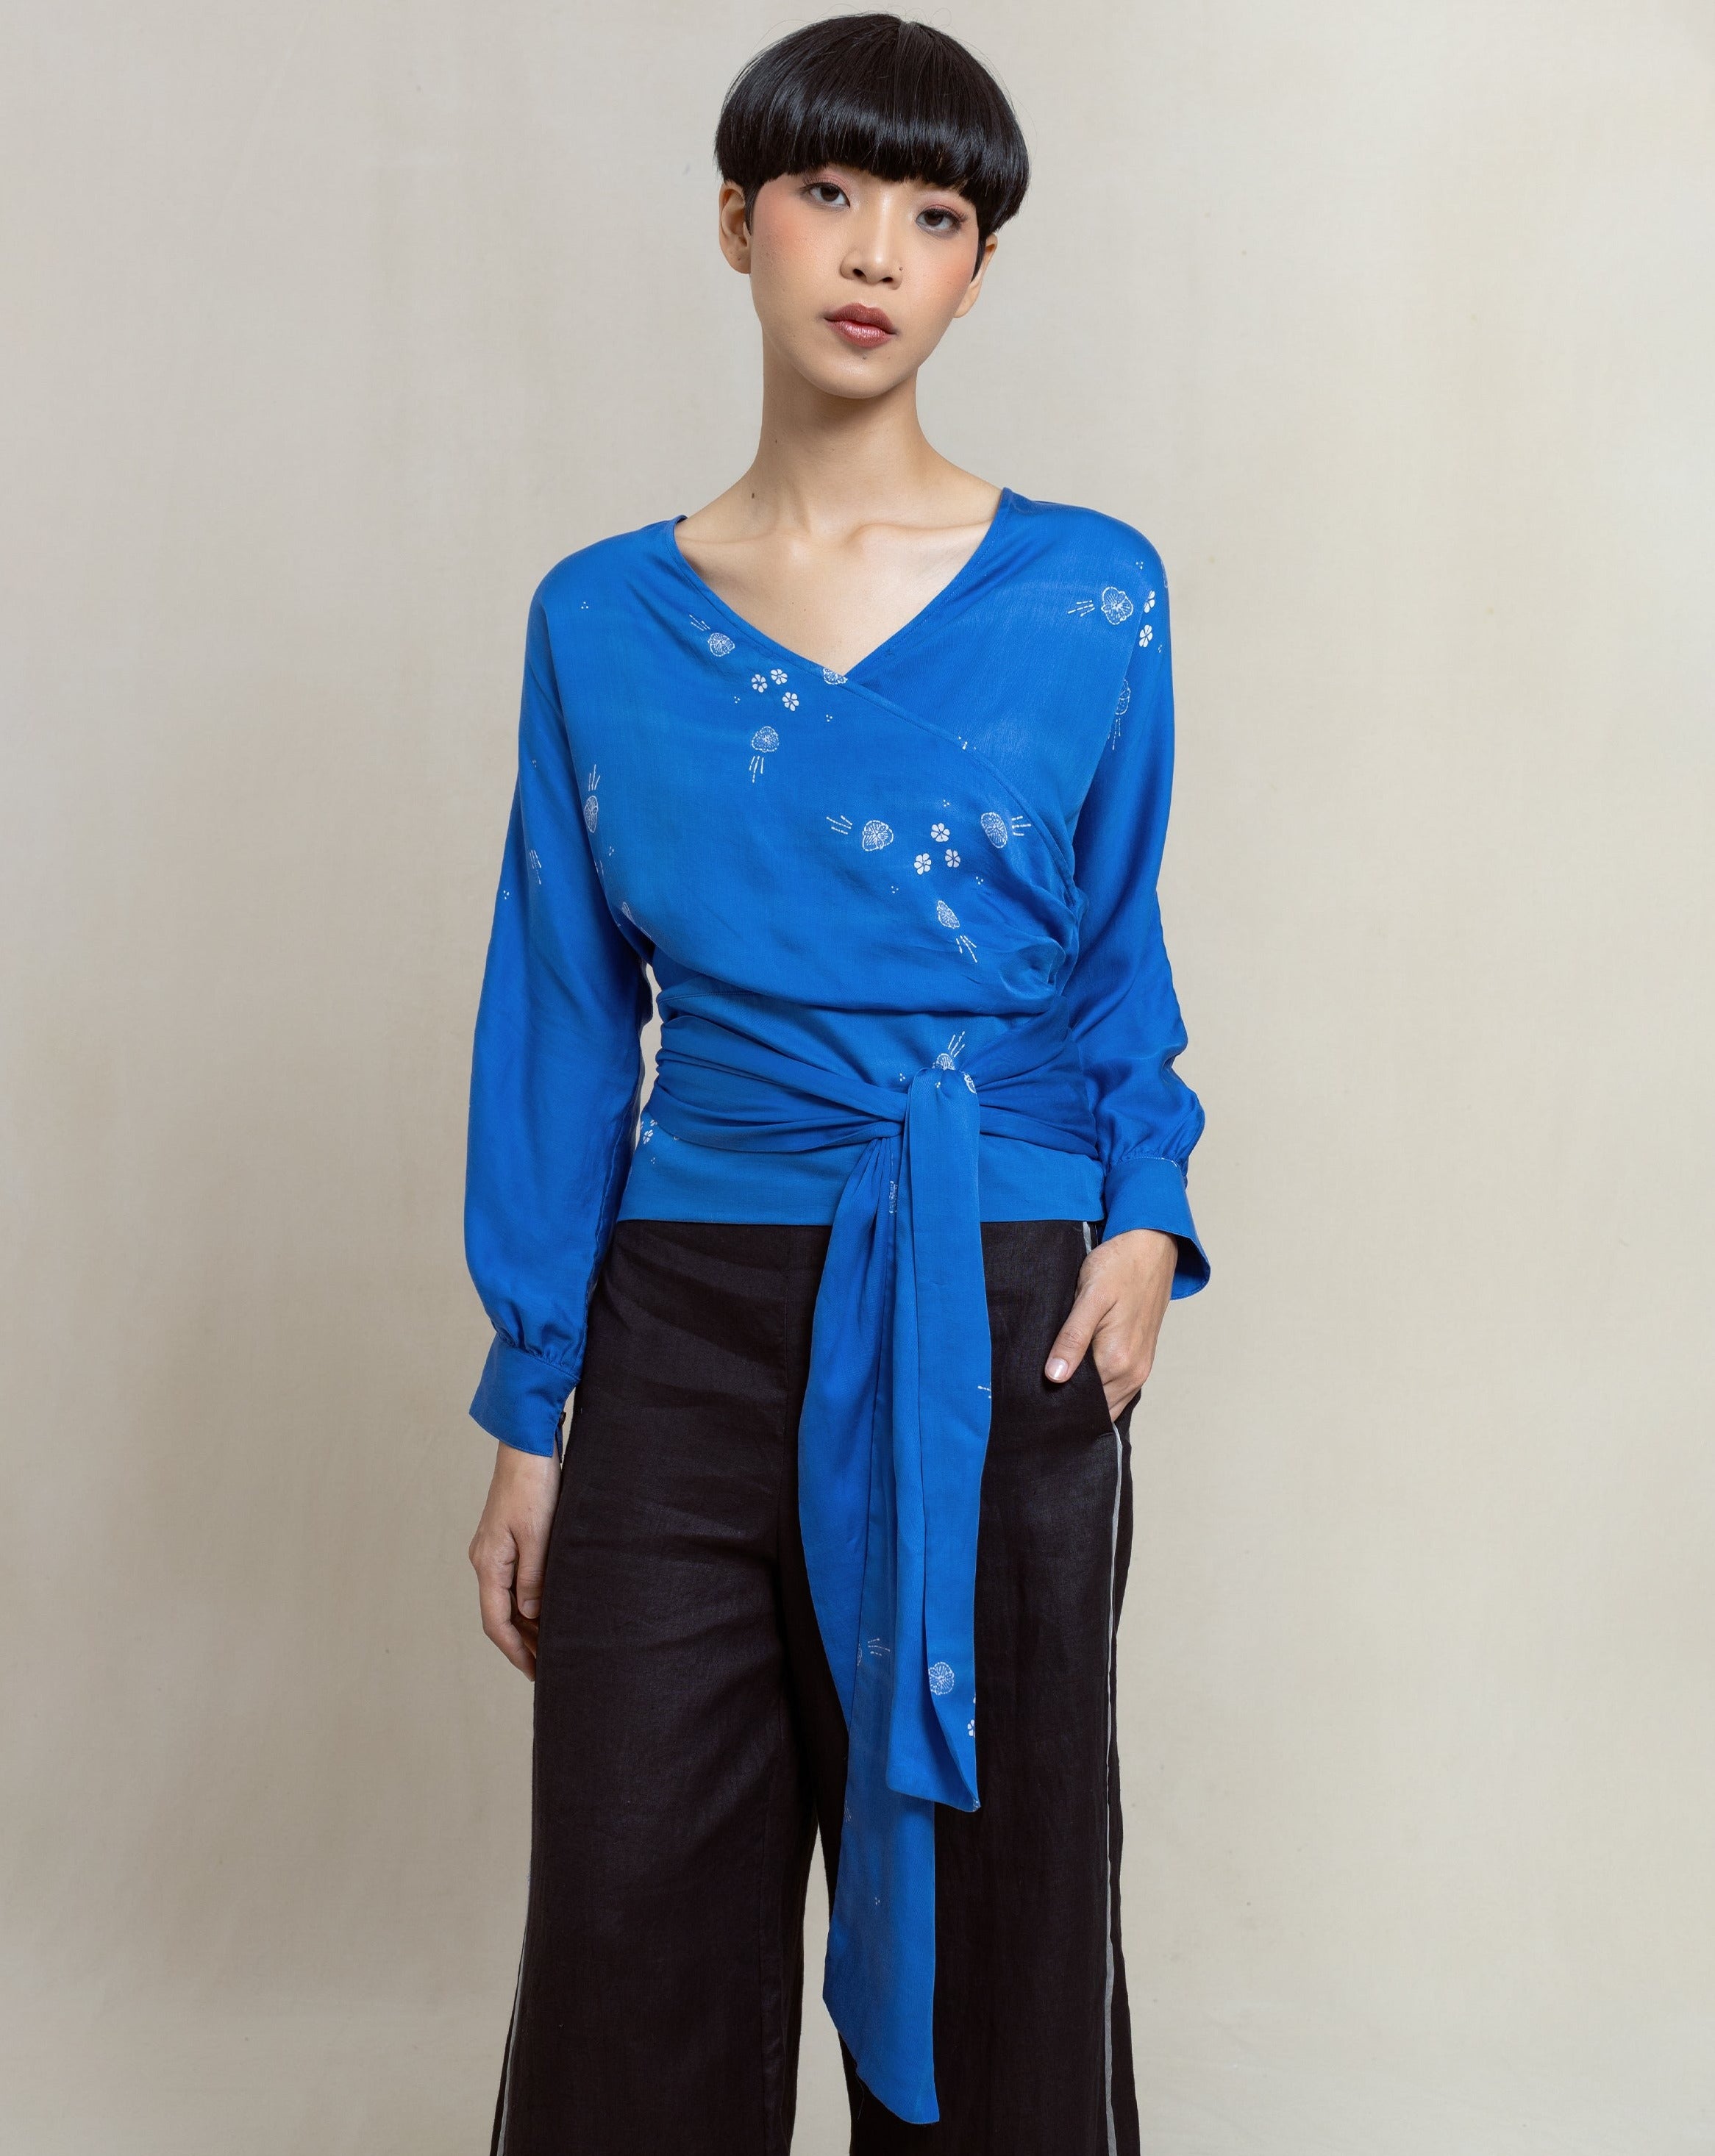 batik top, batik blouse, indigo dye, naturally dye, women's fashion